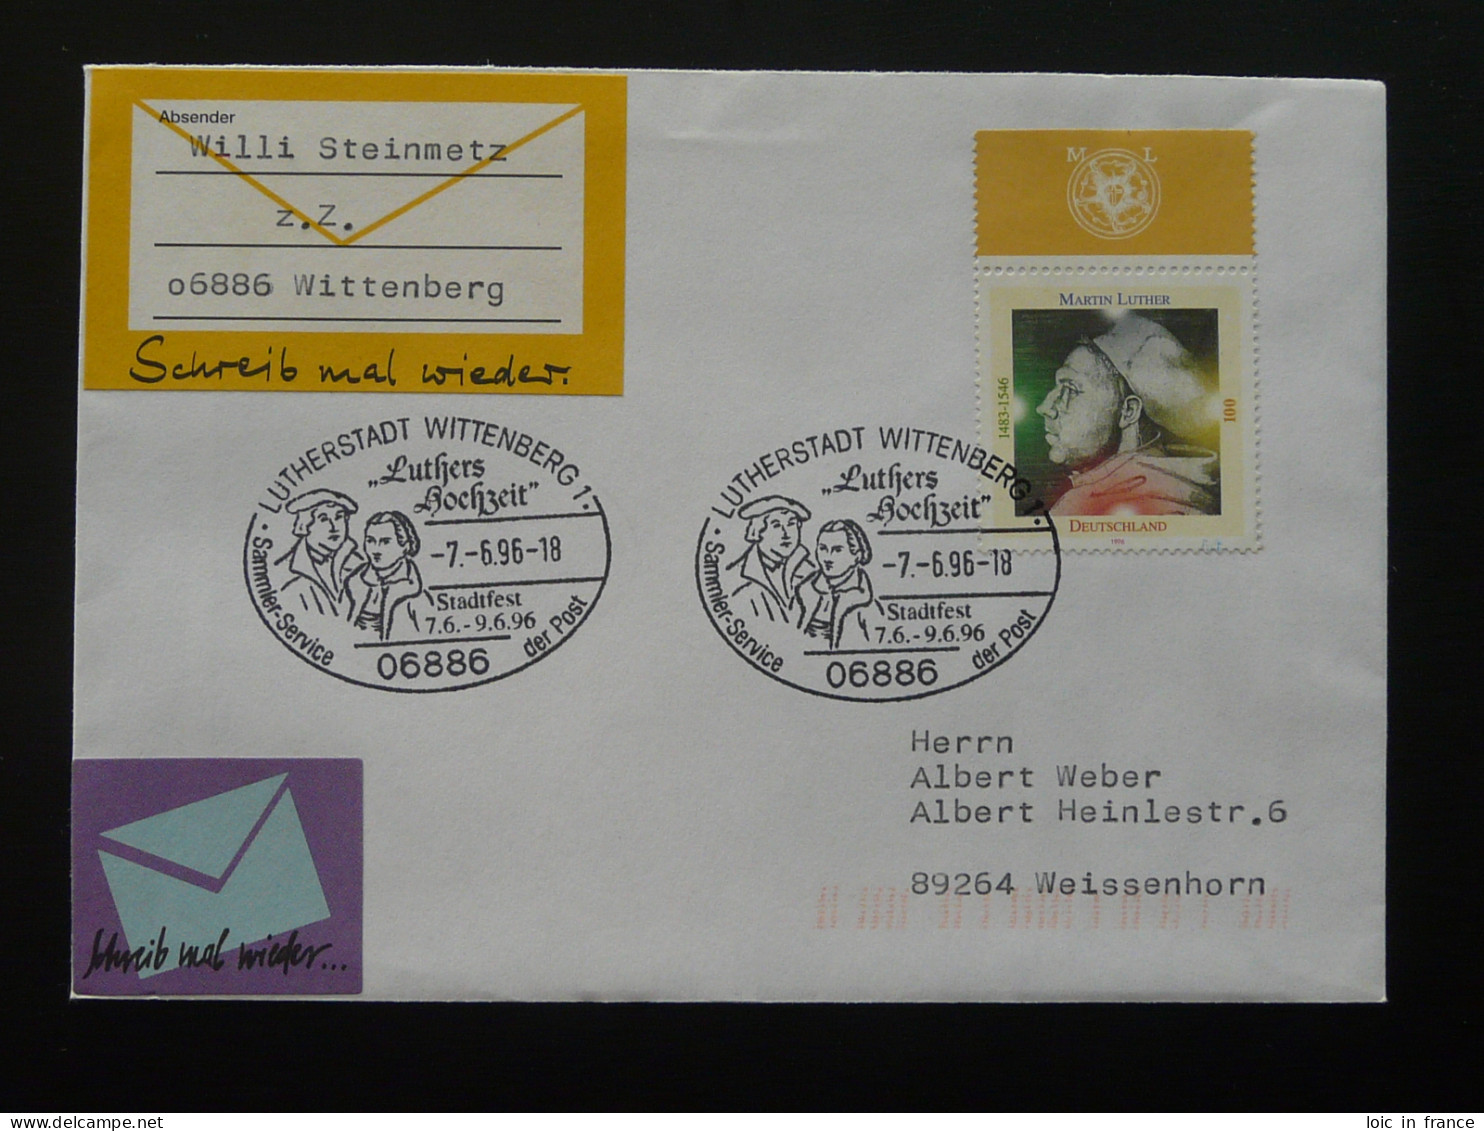 Martin Luther Oblitération Sur Lettre Postmark On Cover Wittenberg Allemagne Germany 1996 - Théologiens